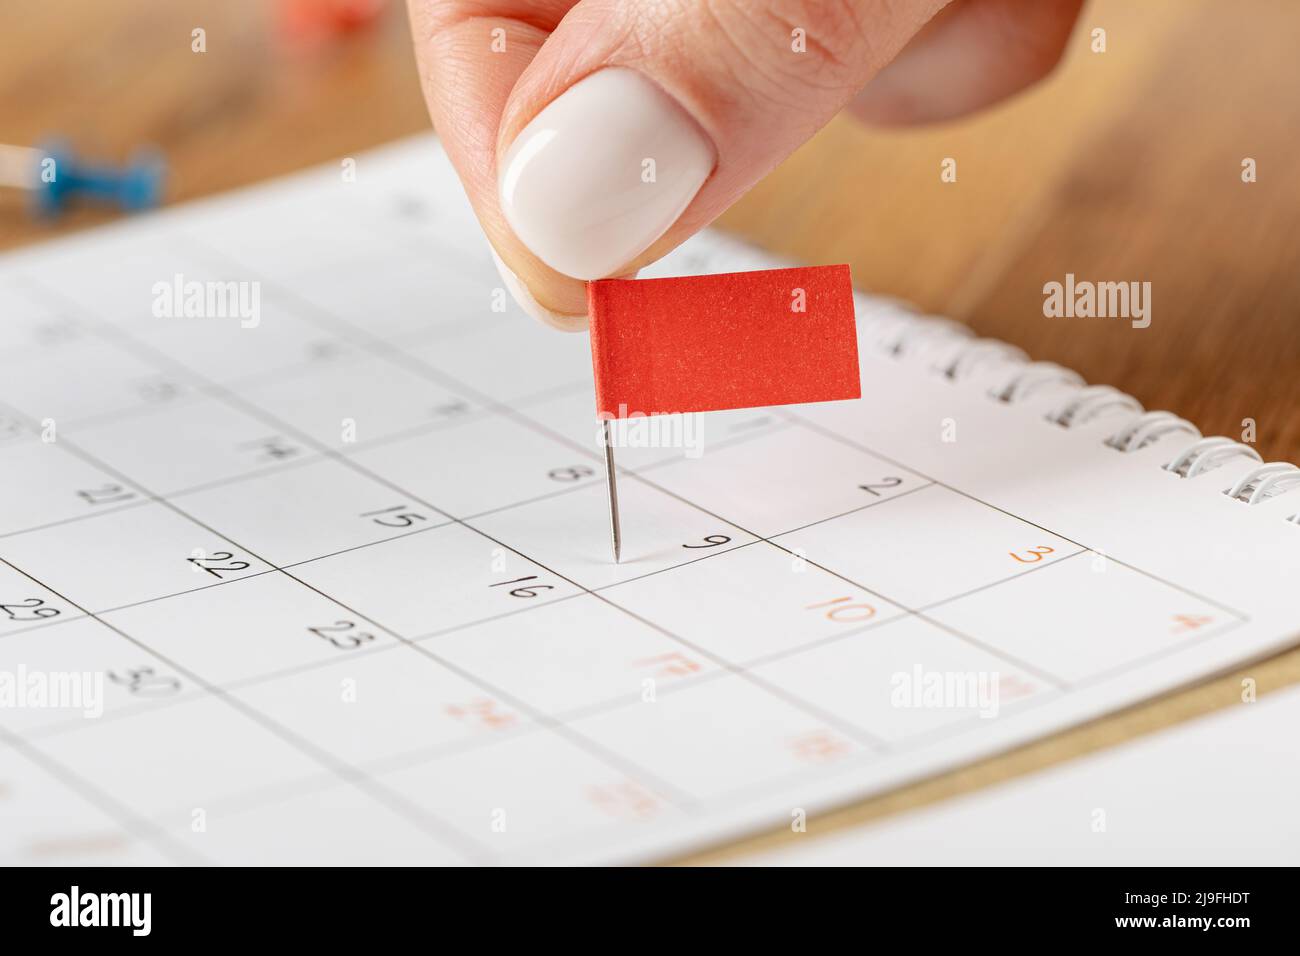 Programación de notas de fijación de manos, miniatura de pin de marca roja en el calendario para recordatorio de reunión y cita Foto de stock